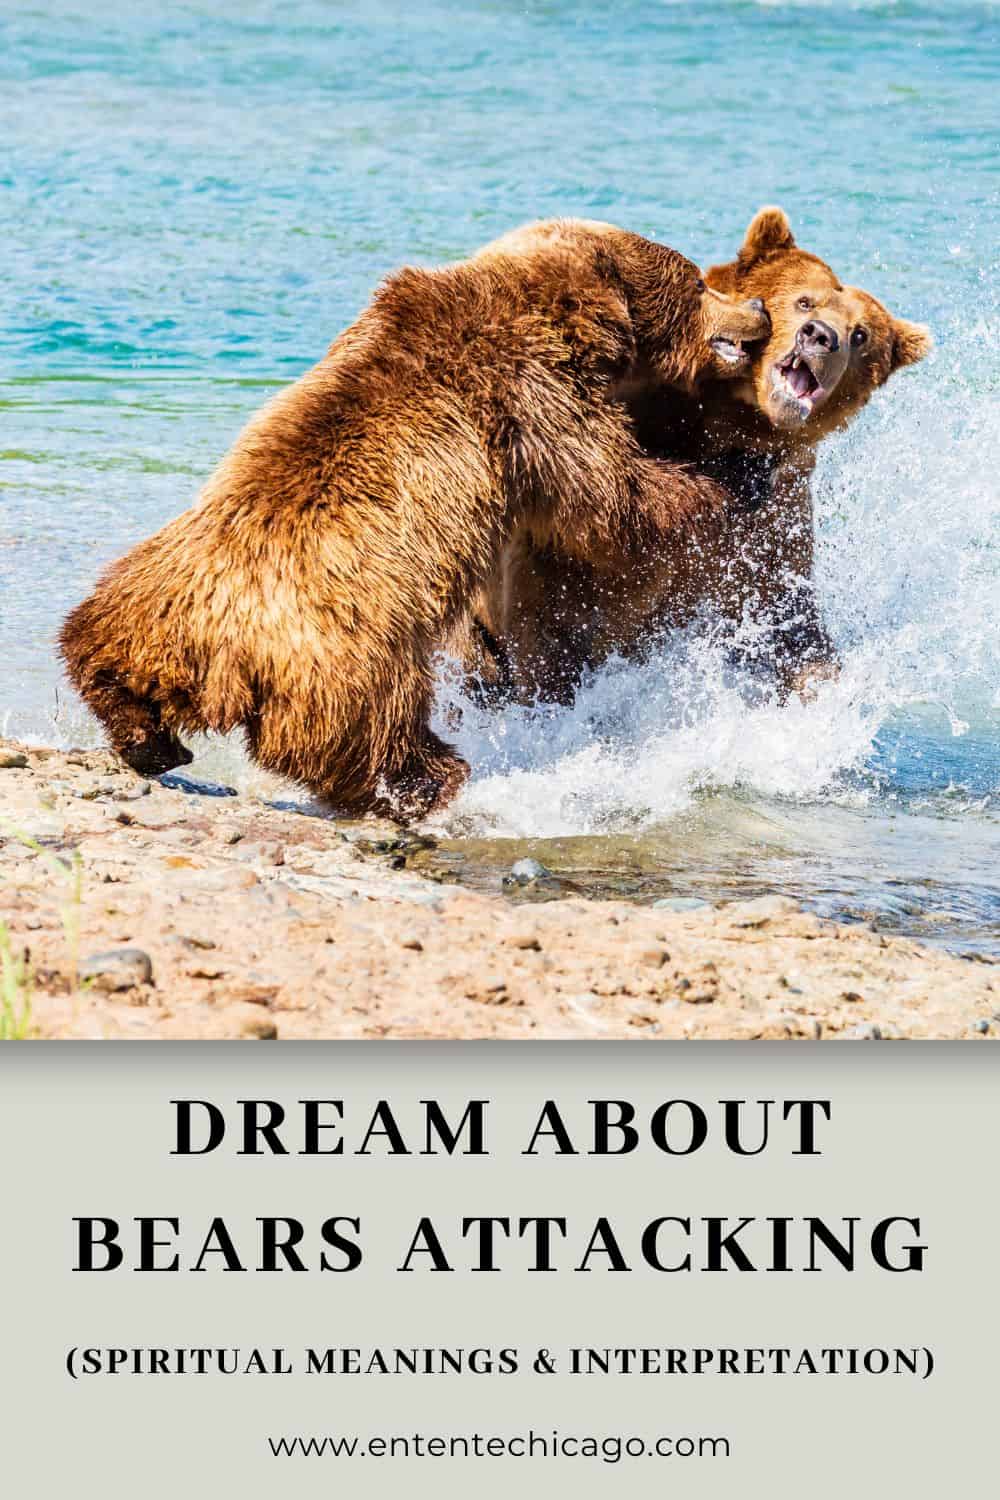  Drøm om bjørn, der angriber nogen (heldig fortolkning)